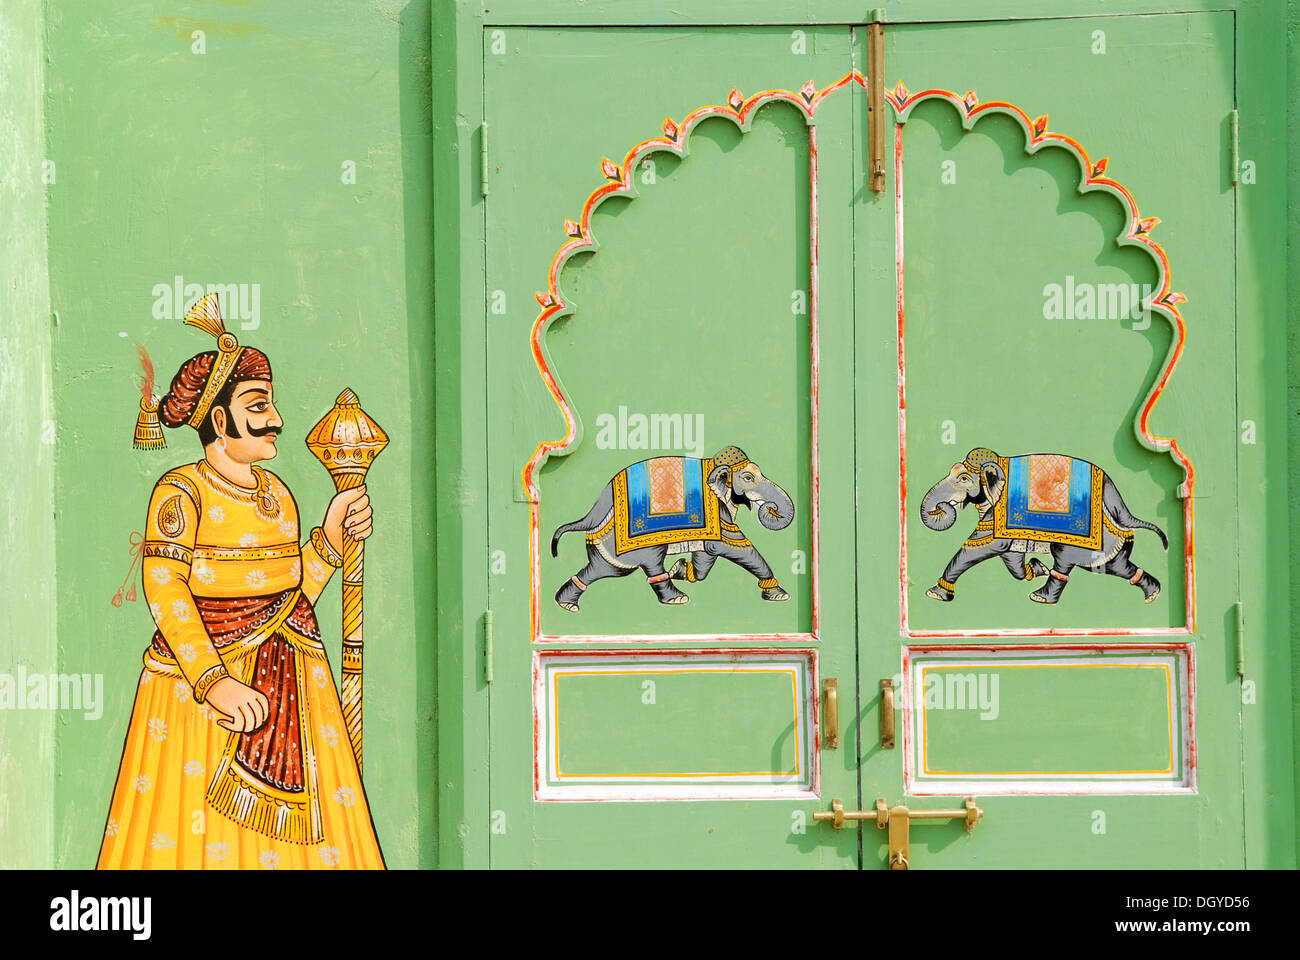 Peinture sur un mur vert et porte, éléphants et Rajput, Shiv Niwas palace, ville d'Udaipur, Rajasthan, Inde du Nord, Inde, Asie Banque D'Images